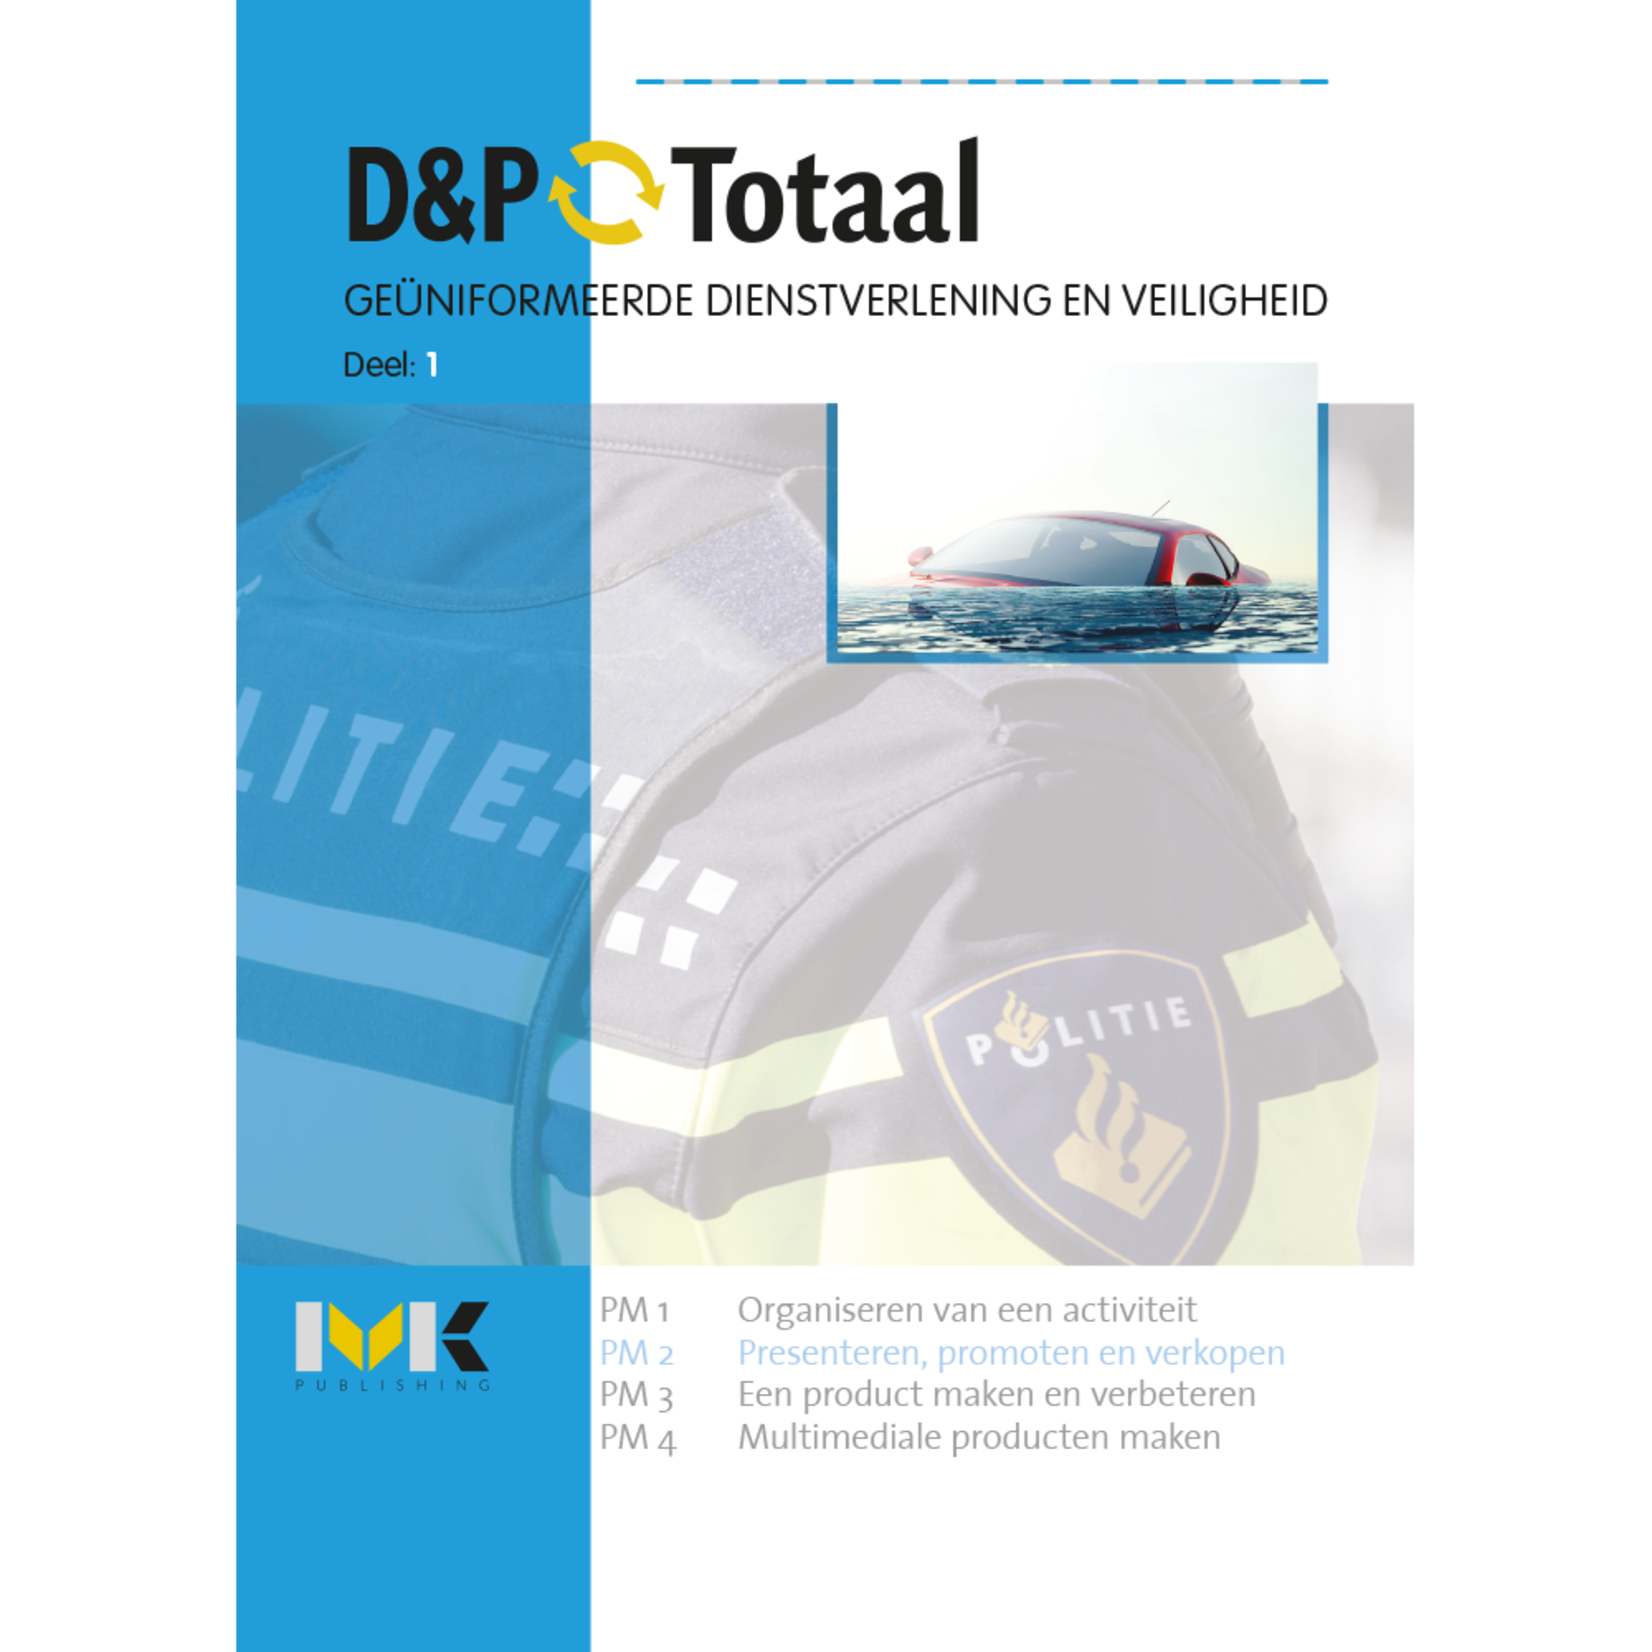 D&P-Totaal - D&P Geüniformeerde dienstverlening en veiligheid (PM2/1910)